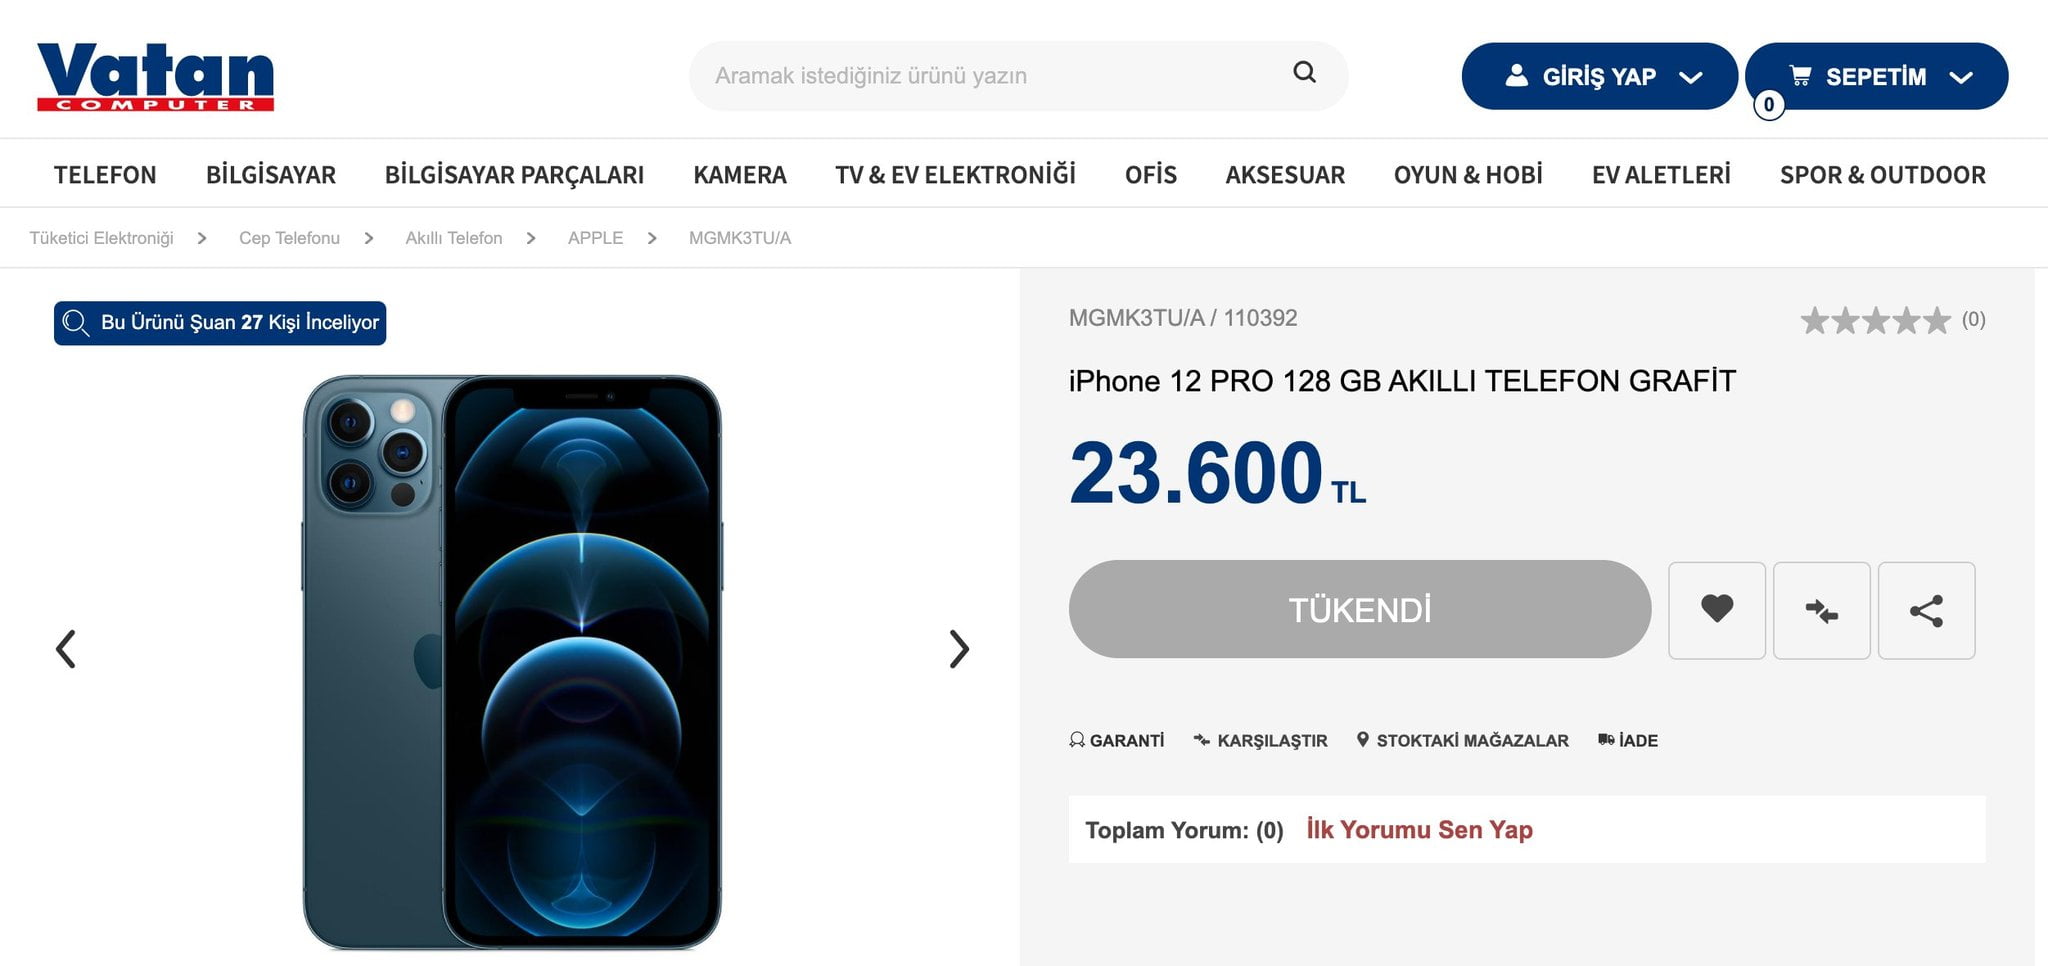 iPhone 12 Pro Türkiye fiyatı